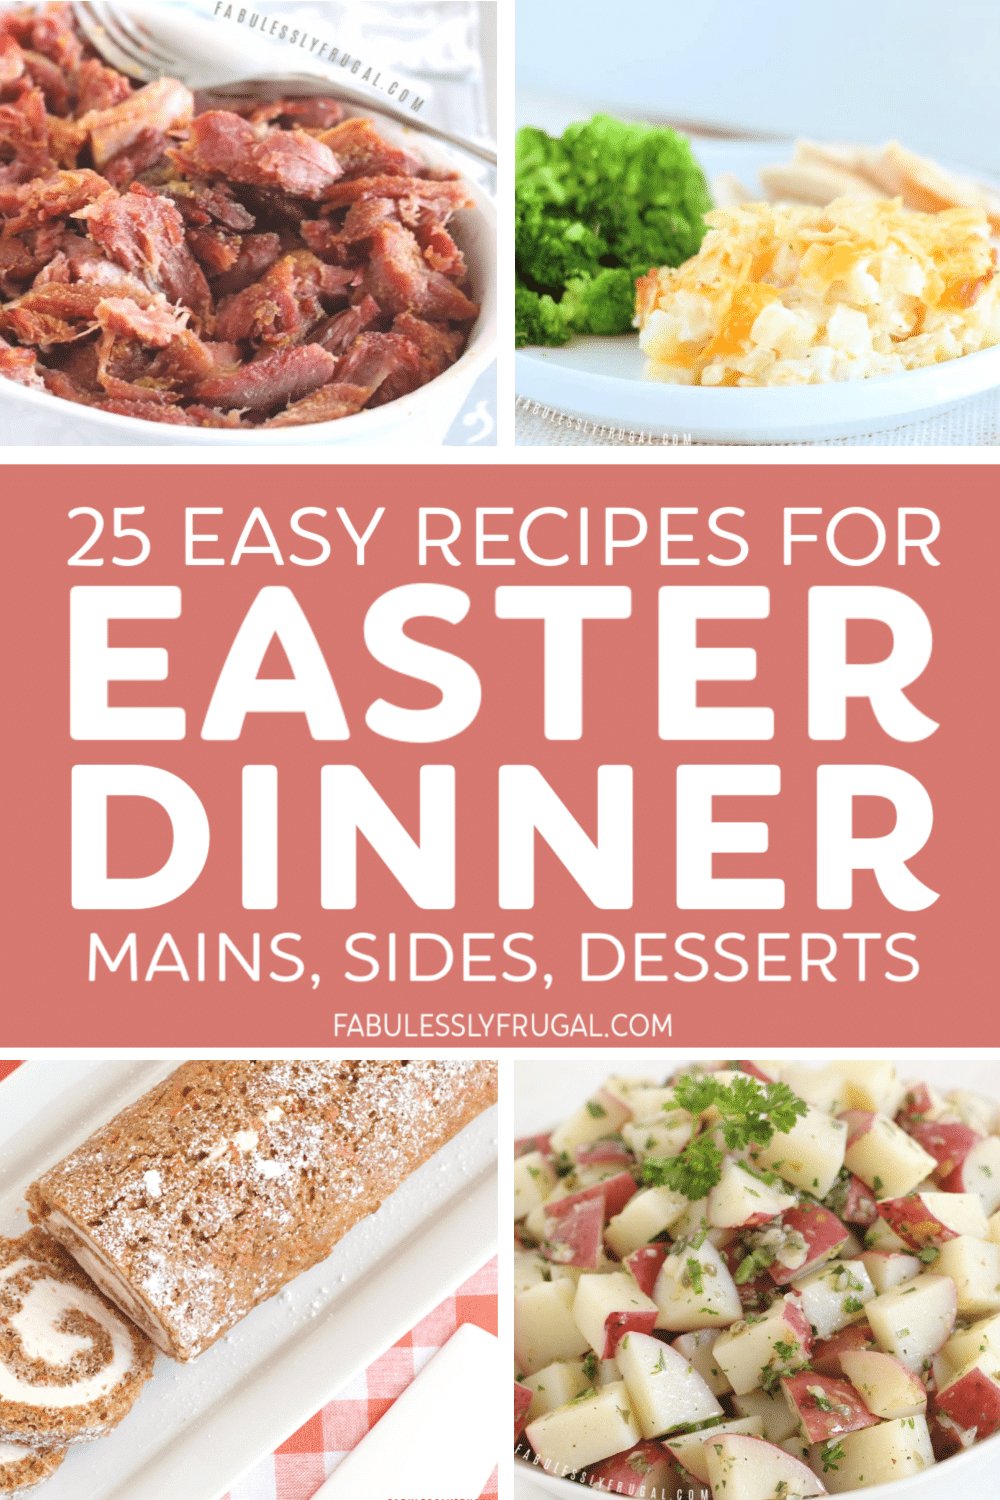 Easter dinner recipes